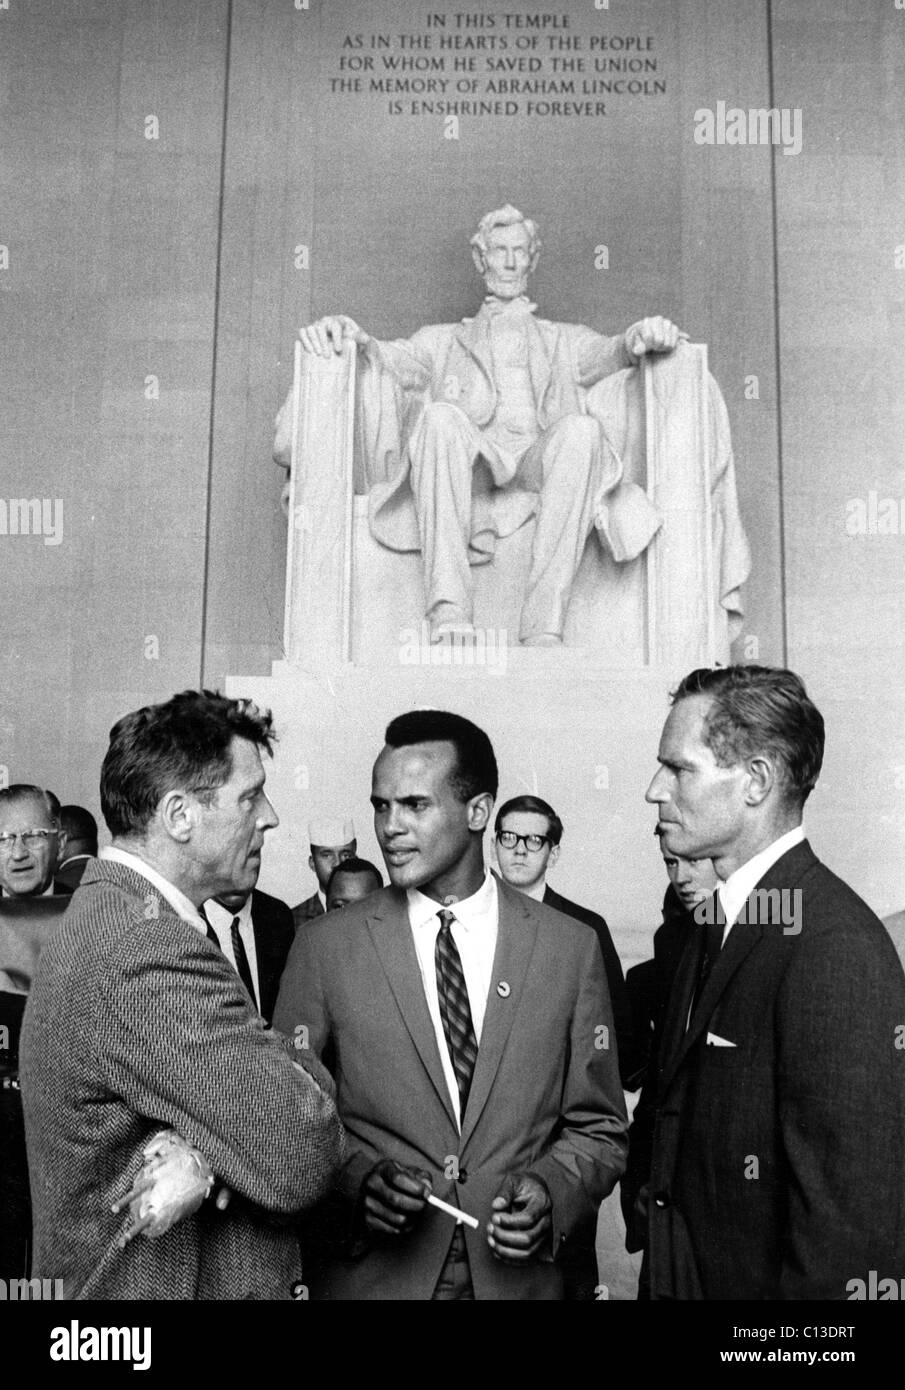 Burt Lancaster, Harry Belafonte et Charlton Heston au Lincoln Memorial pendant la marche vers Washington Droits civils ('I have a dream'), le 29 août 1963 Banque D'Images